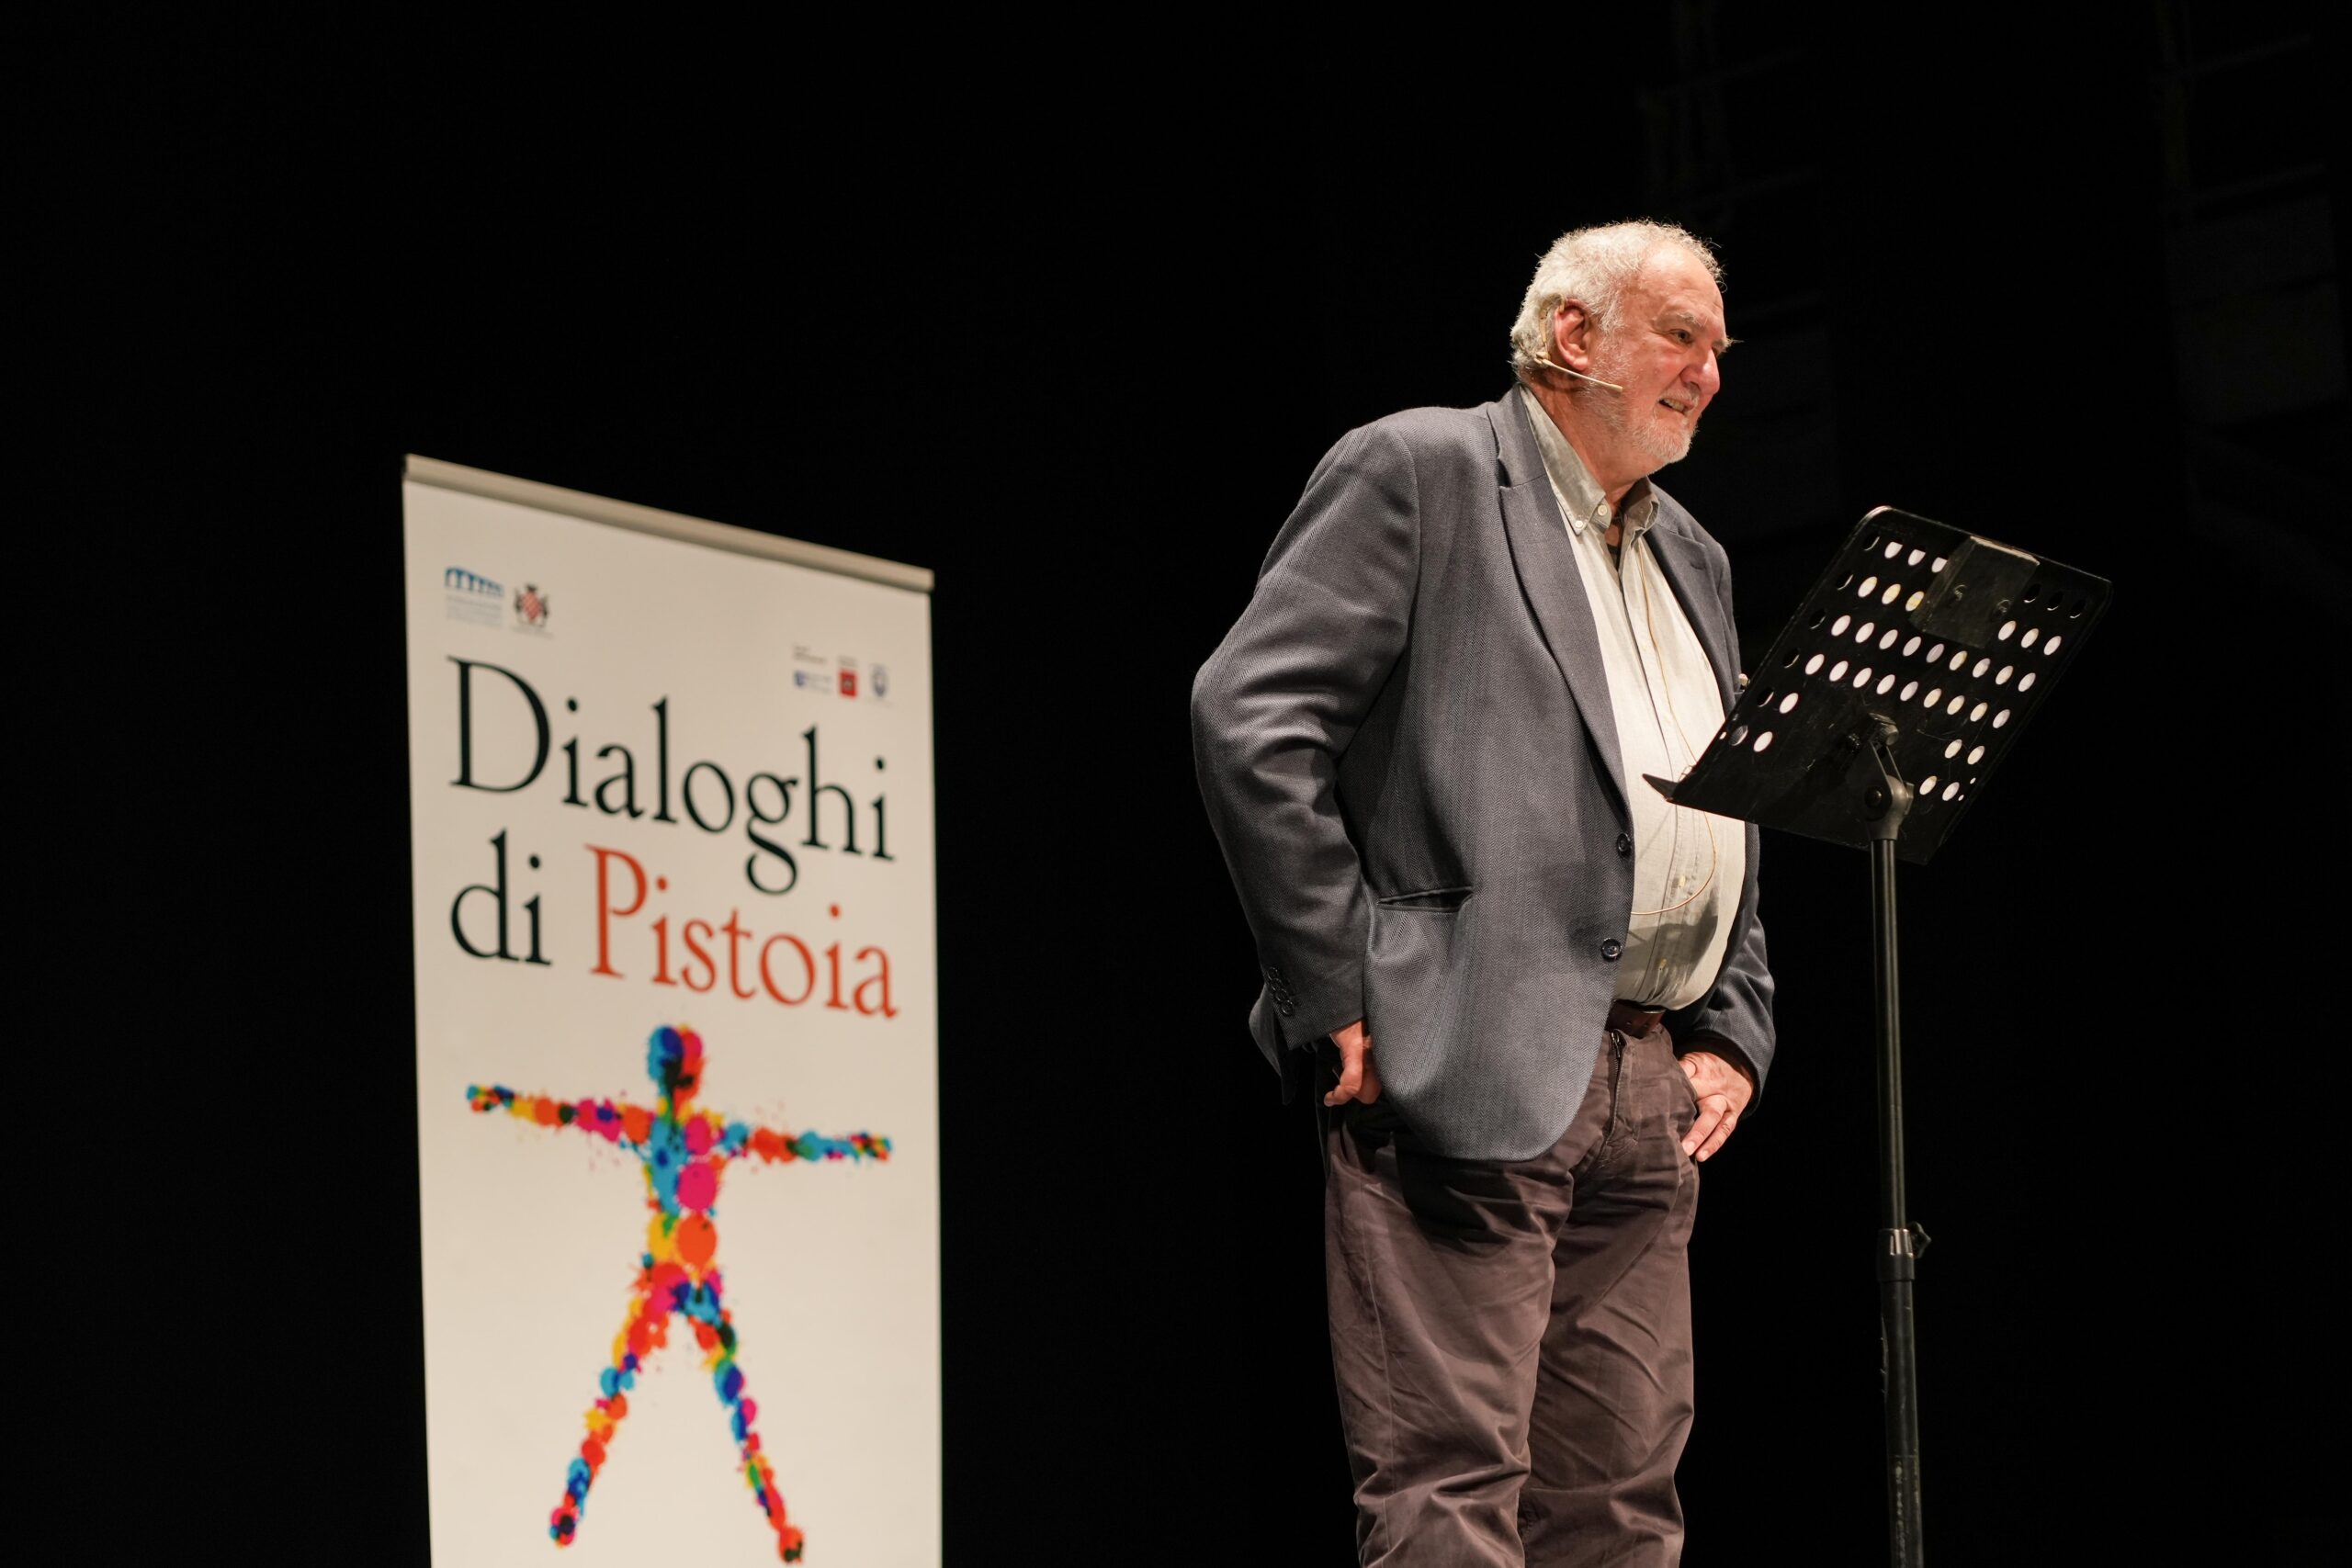 Giovedì 18 gennaio: al via le lezioni introduttive ai Dialoghi di Pistoia con Marco Aime (teatro Bolognini, ore 11)